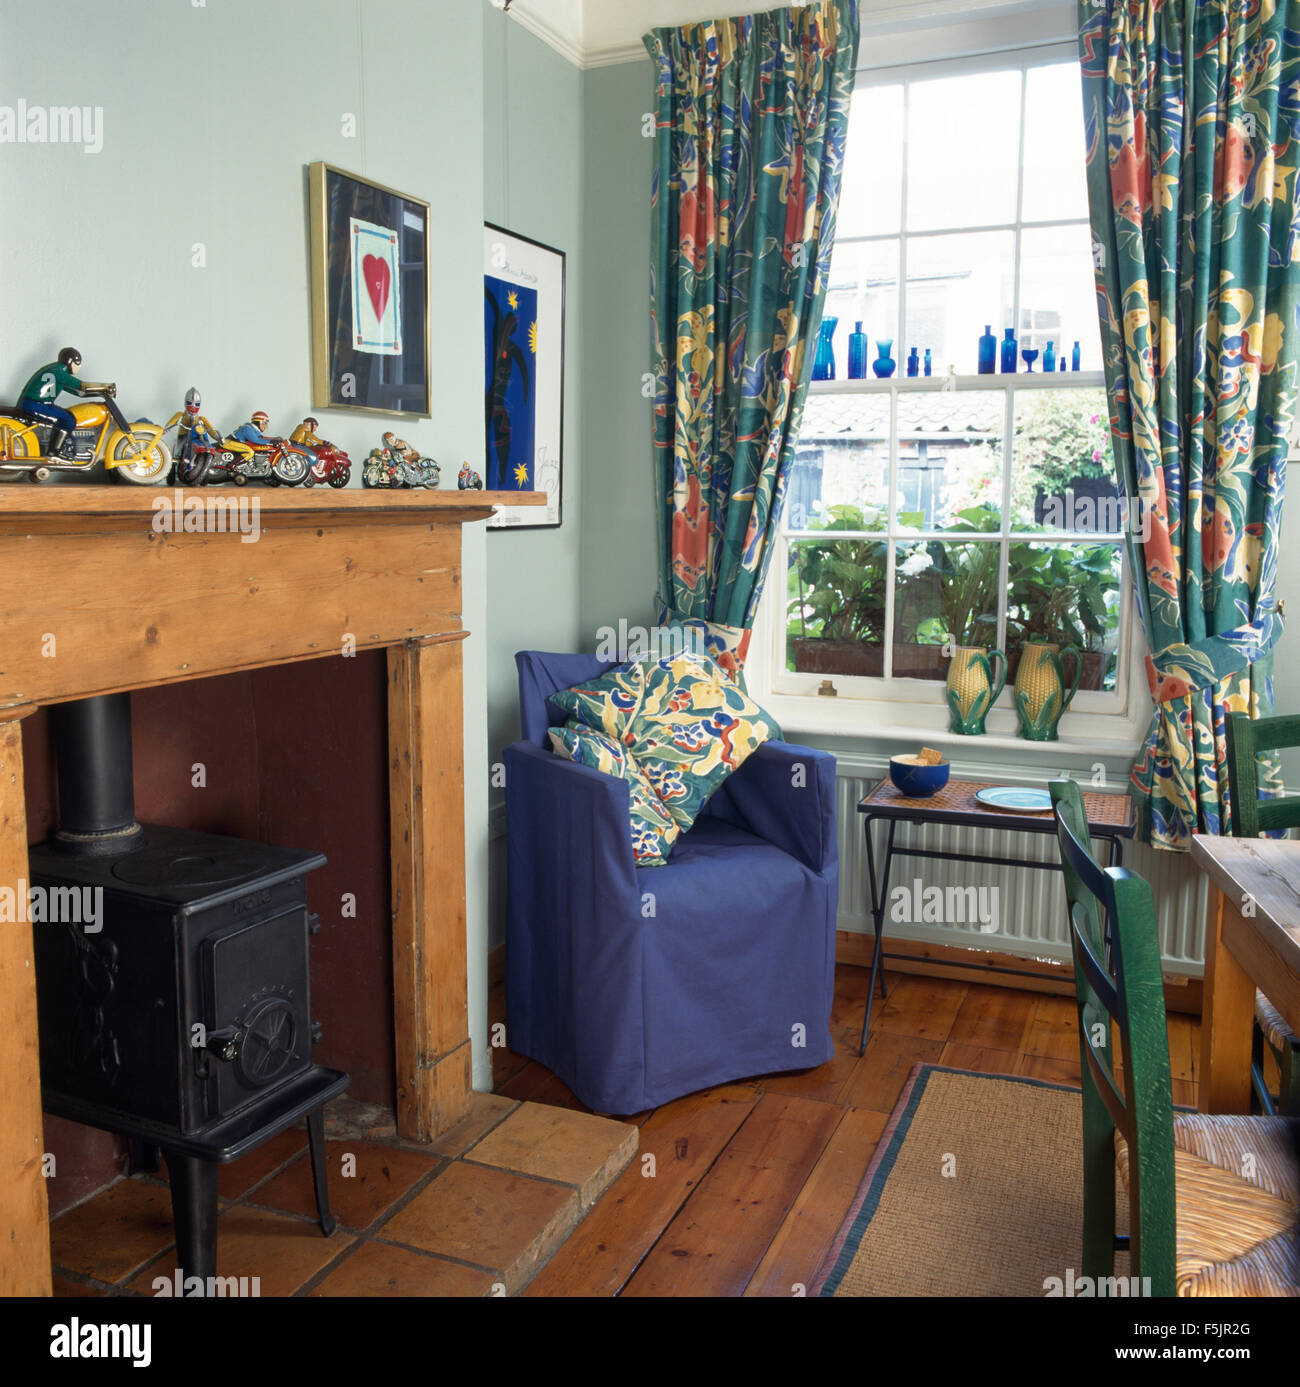 Poêle à bois dans la cheminée dans la salle à manger de style économique avec un couvercle desserré bleu sur chaise à côté de fenêtre avec des rideaux aux motifs floraux Banque D'Images